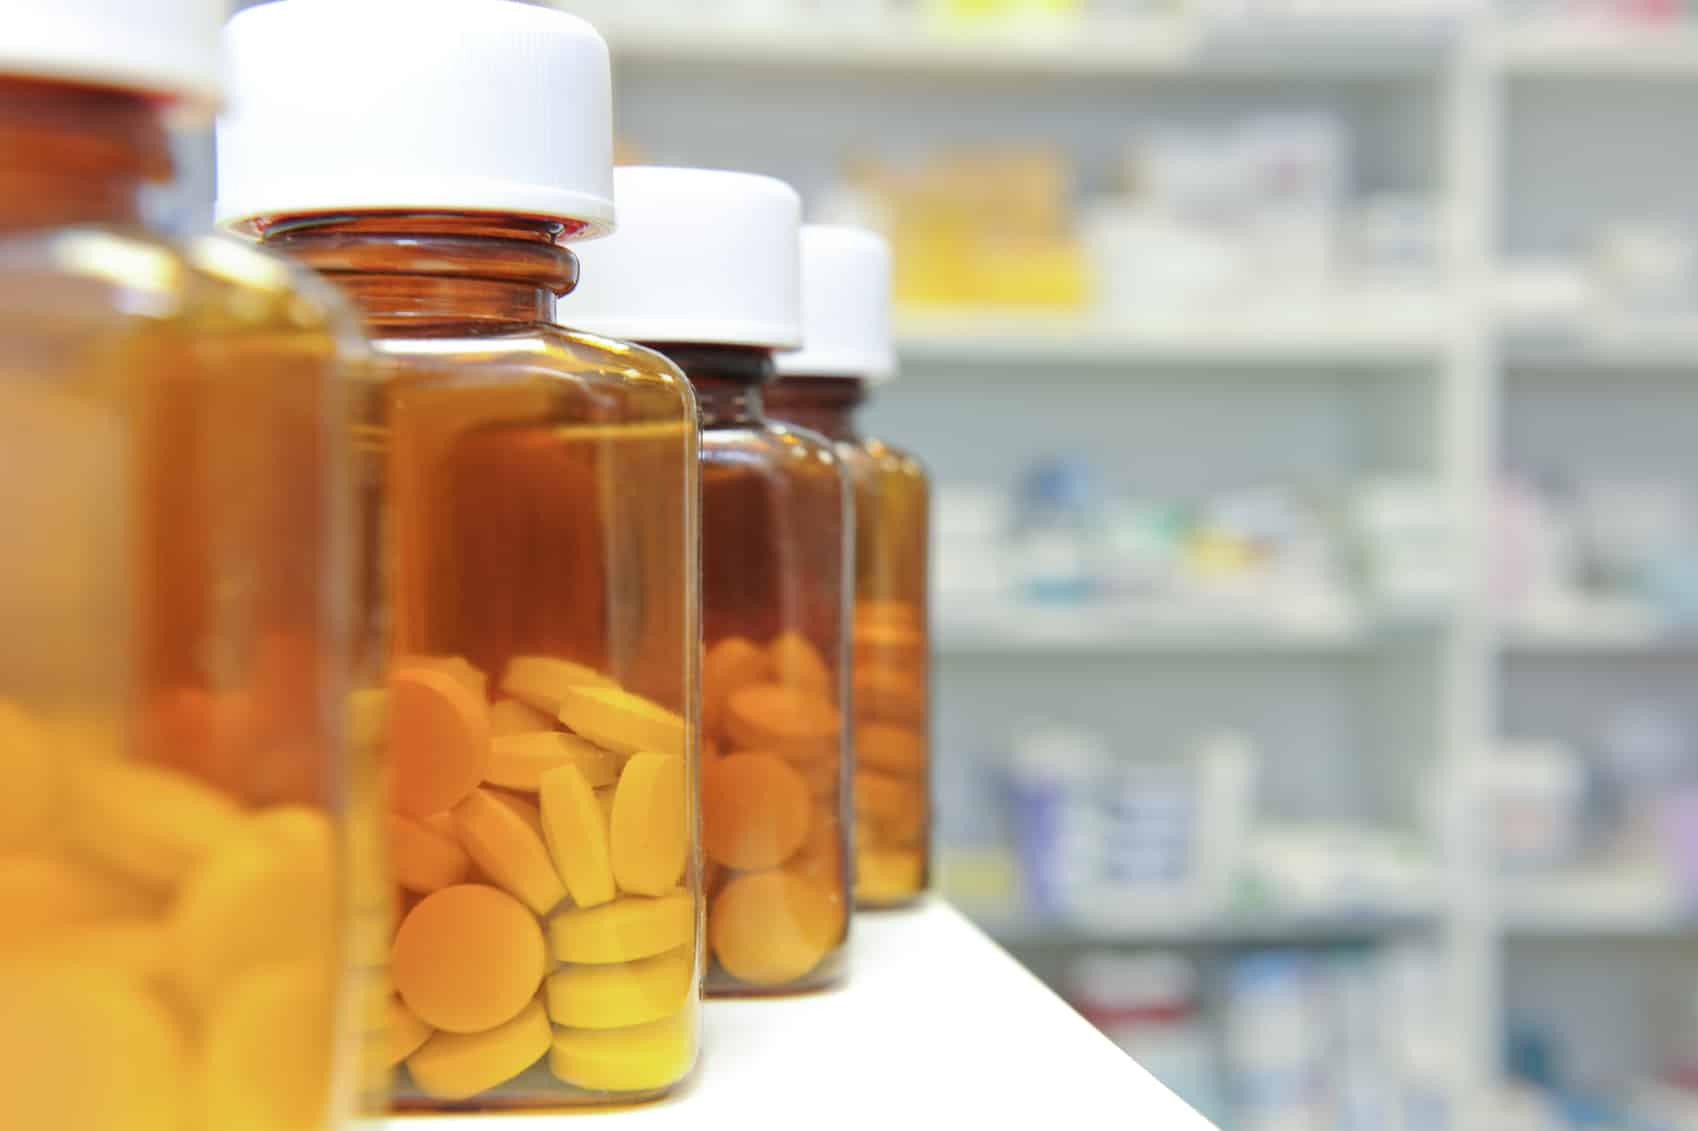 Shelves with pills in bottles